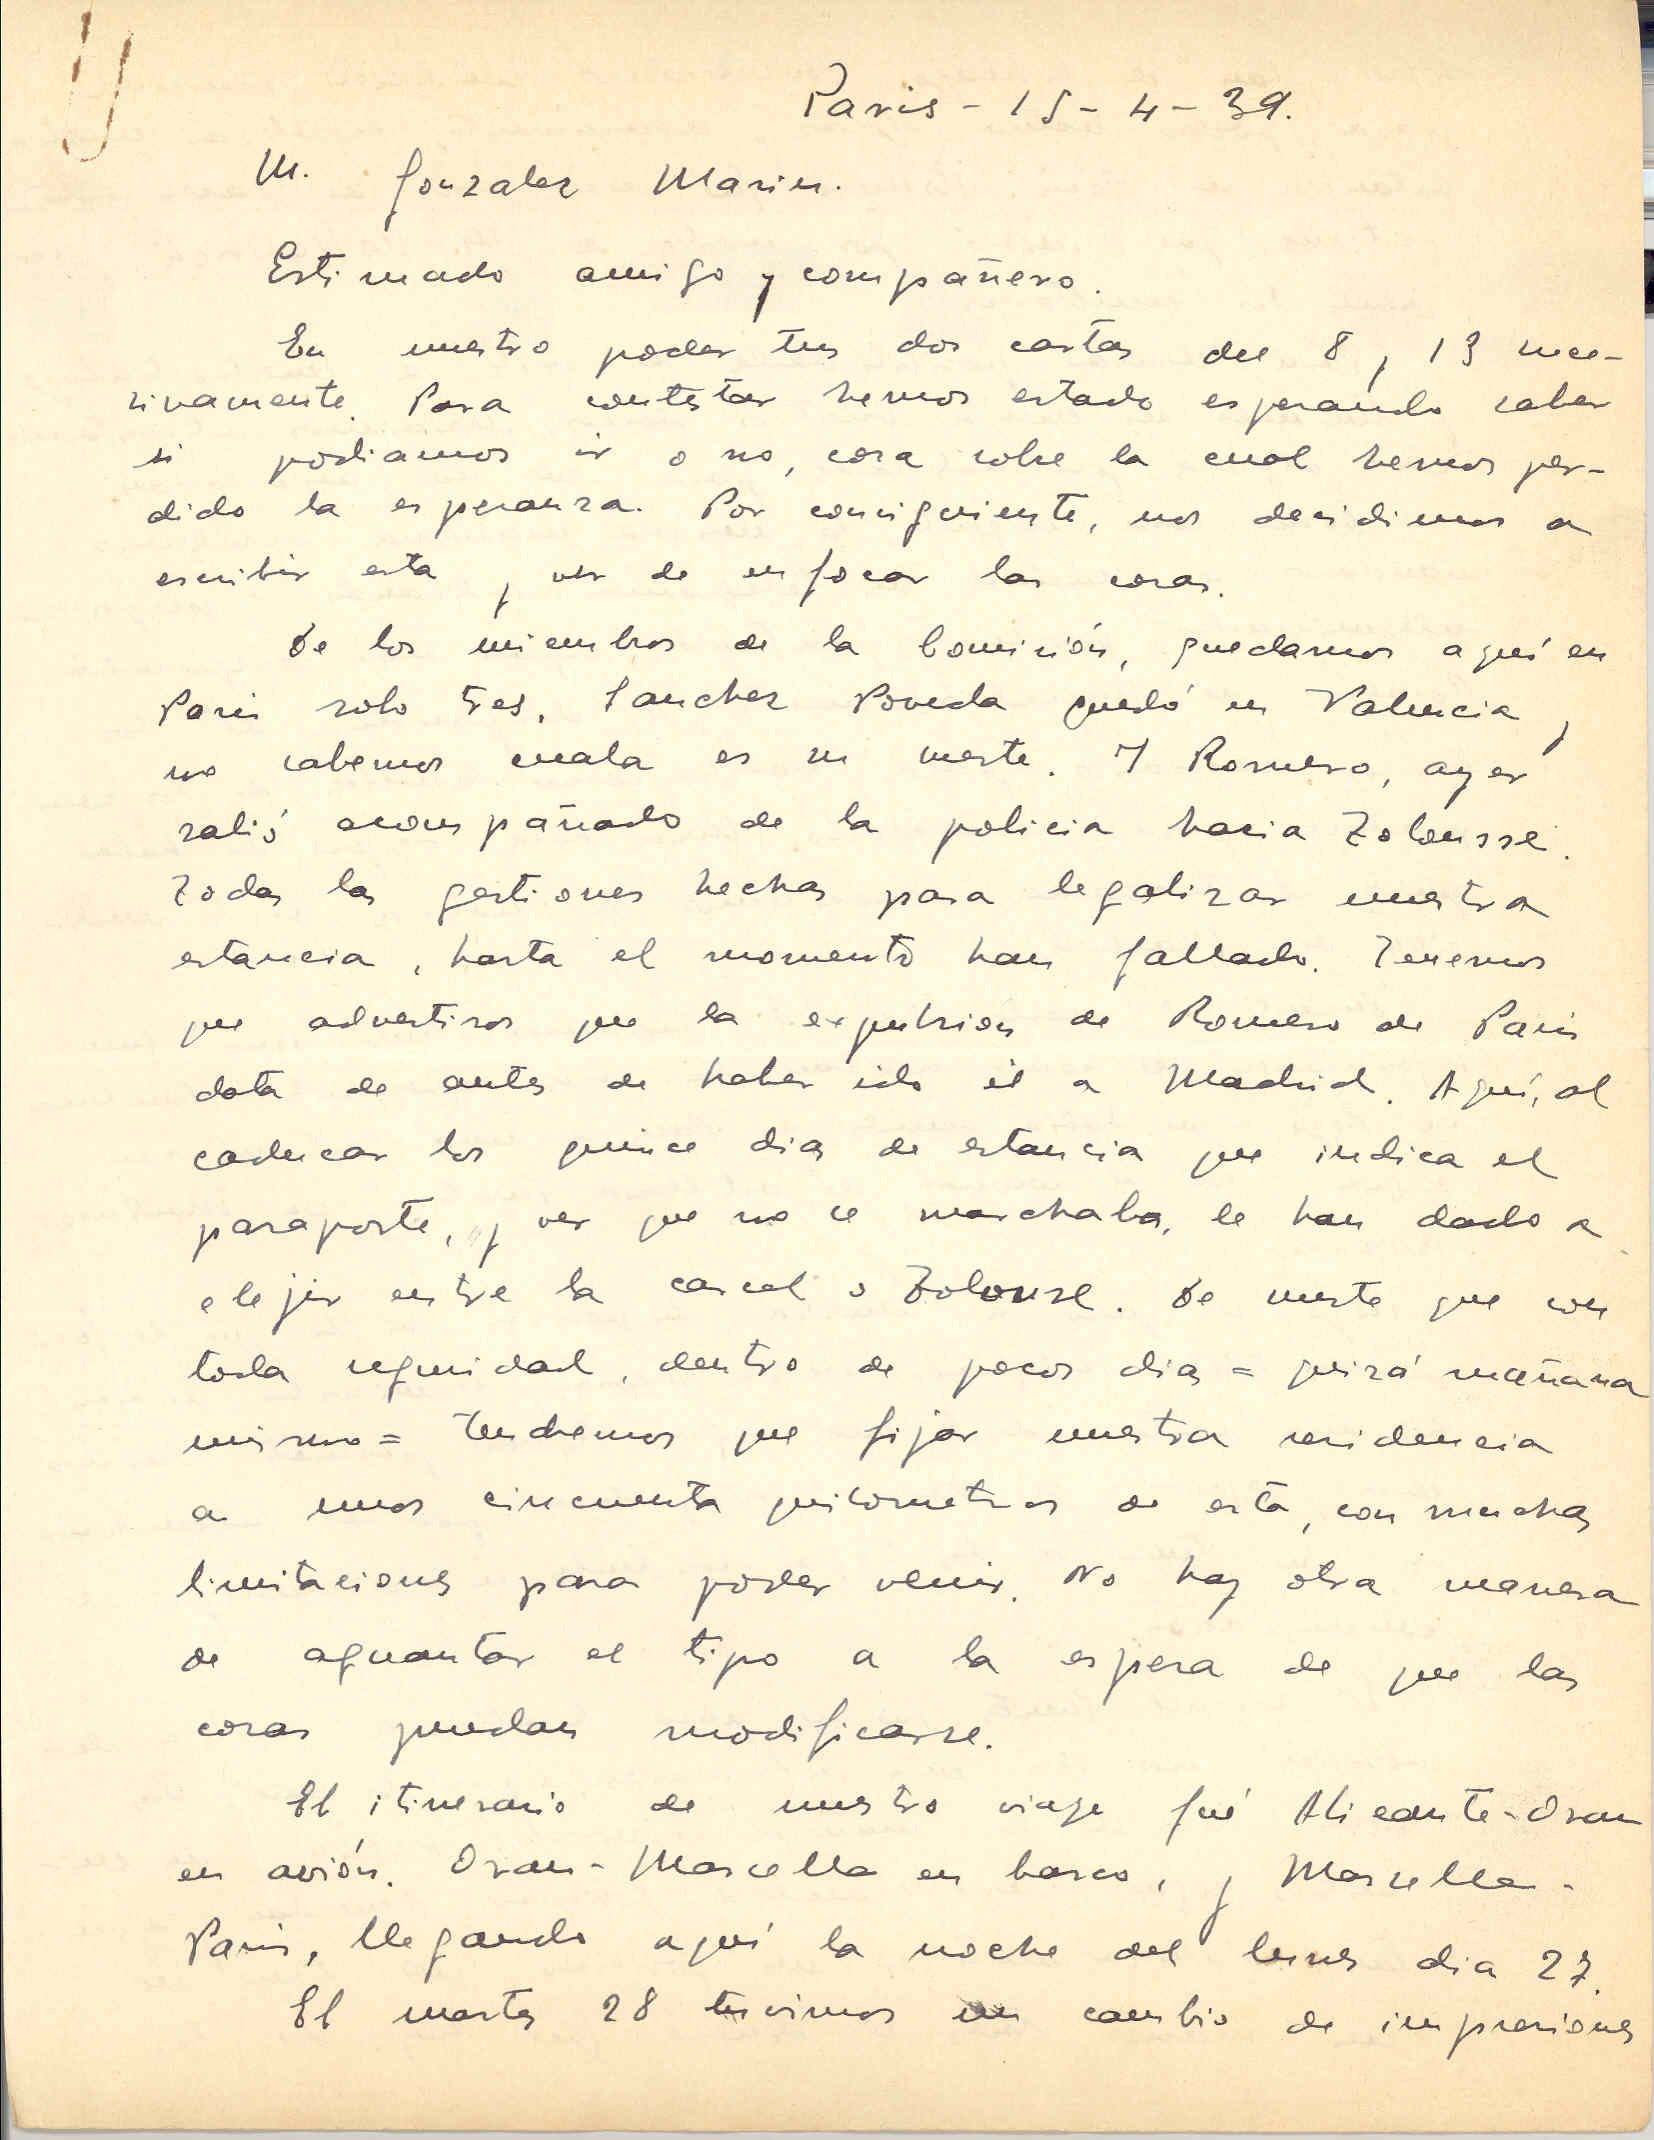 Carta a González Marín en la que relata su salida de España y su llegada a París y los contactos con diversas personalidades exiliadas; presenta un plan para oponerse al gobierno de Negrín y recuperar los fondos de la República.